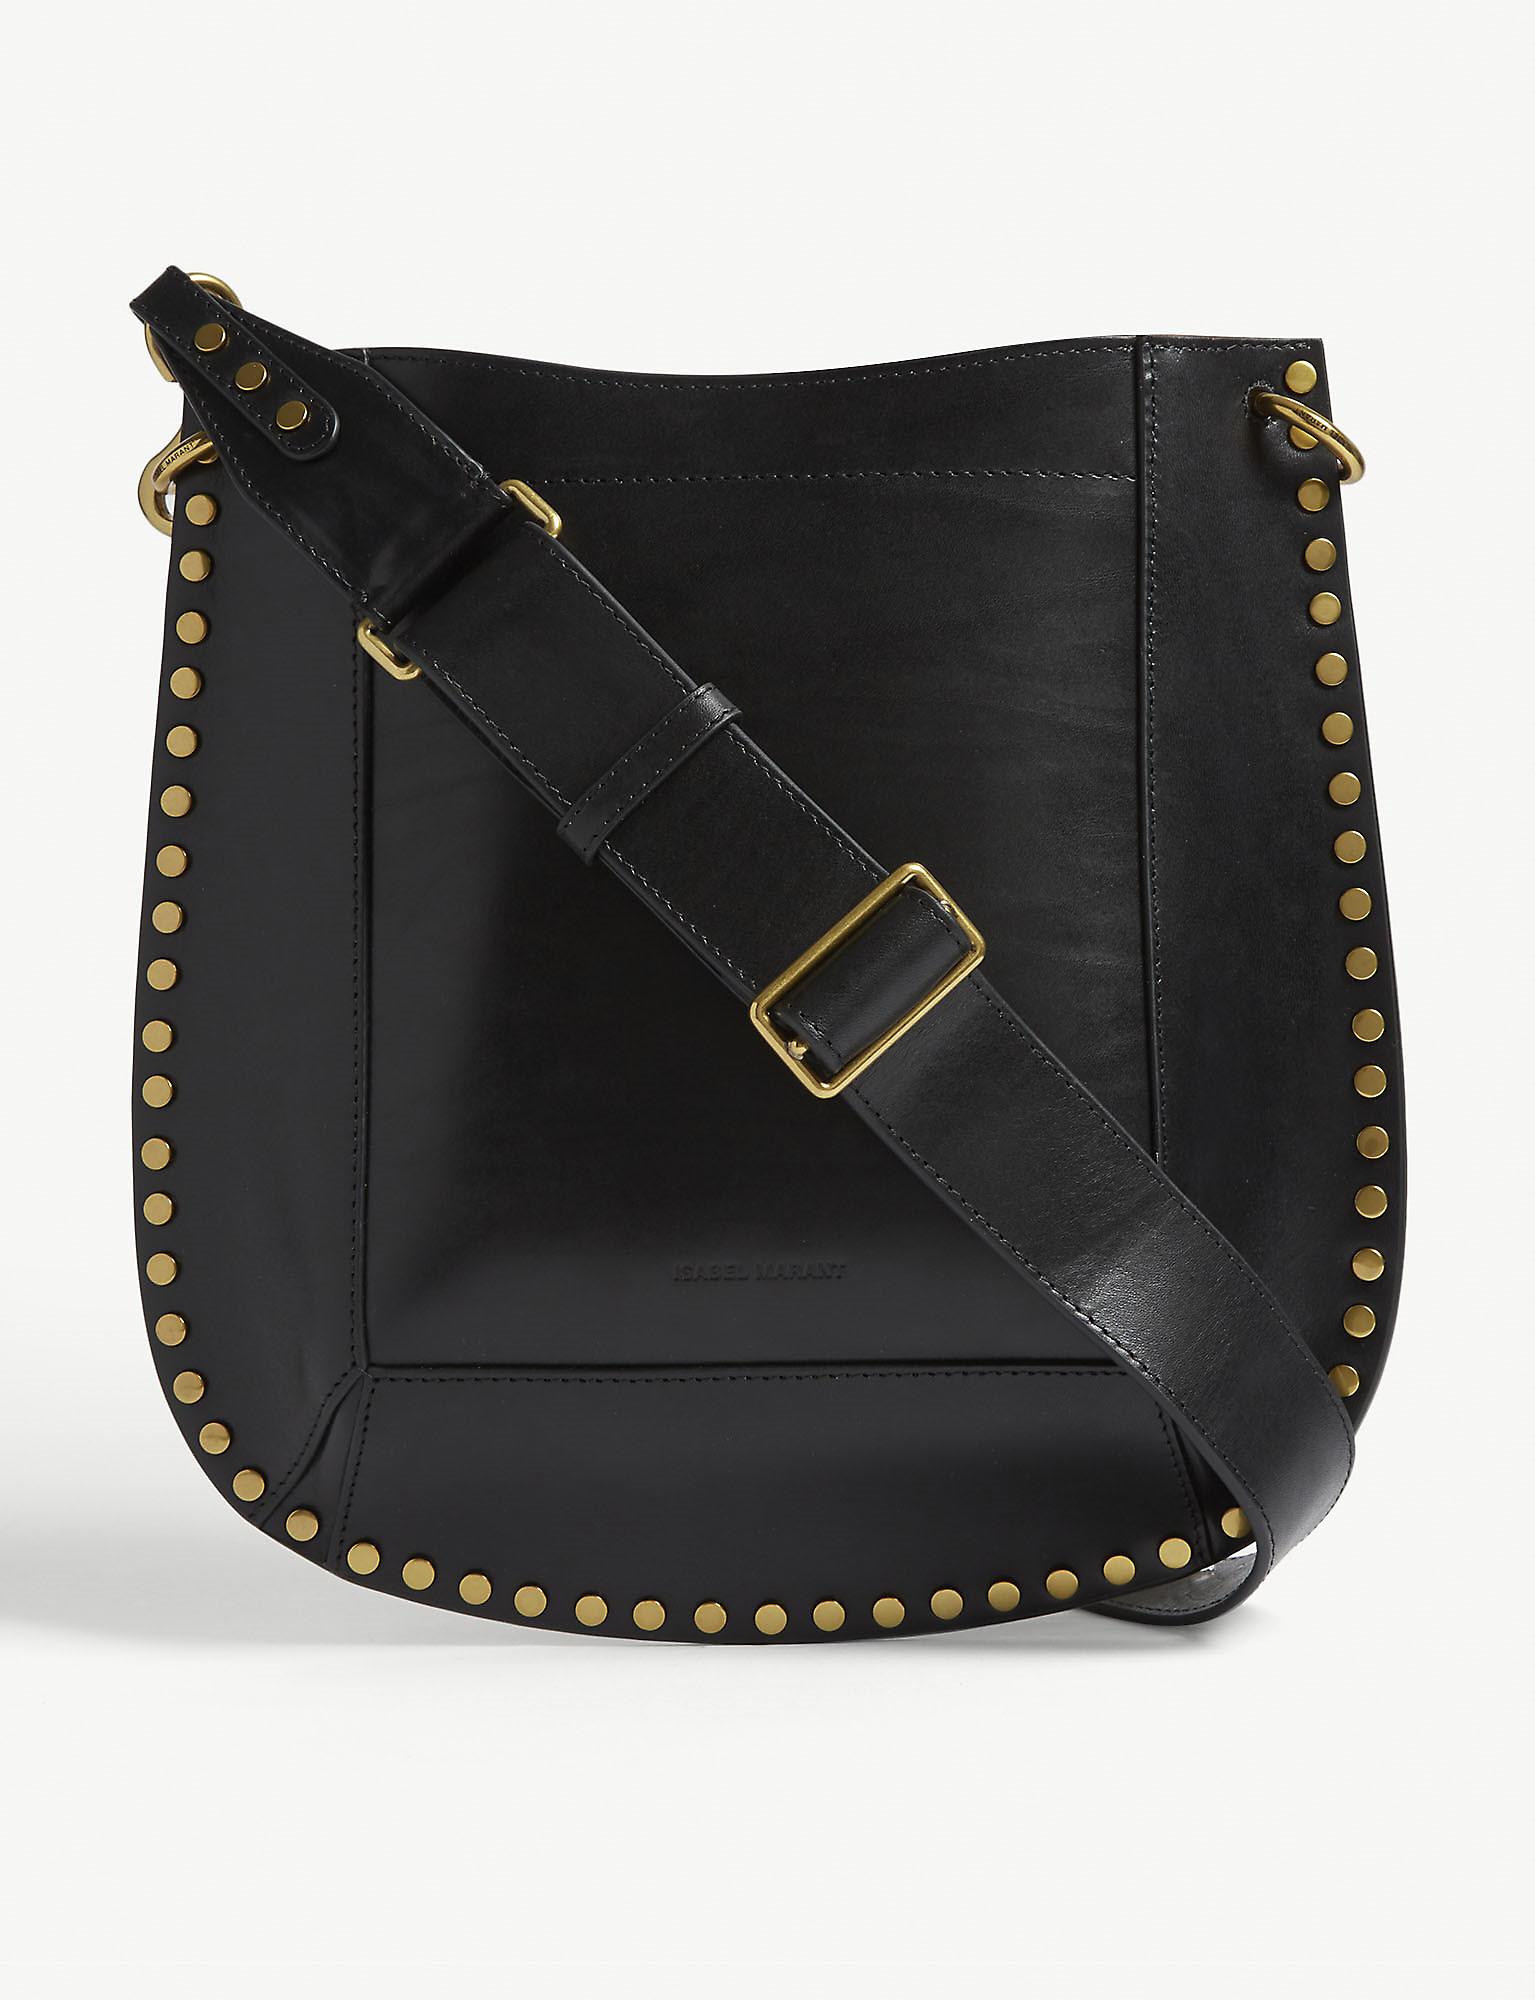 Isabel Marant Oskan Leather Cross-body Bag in Black - Lyst